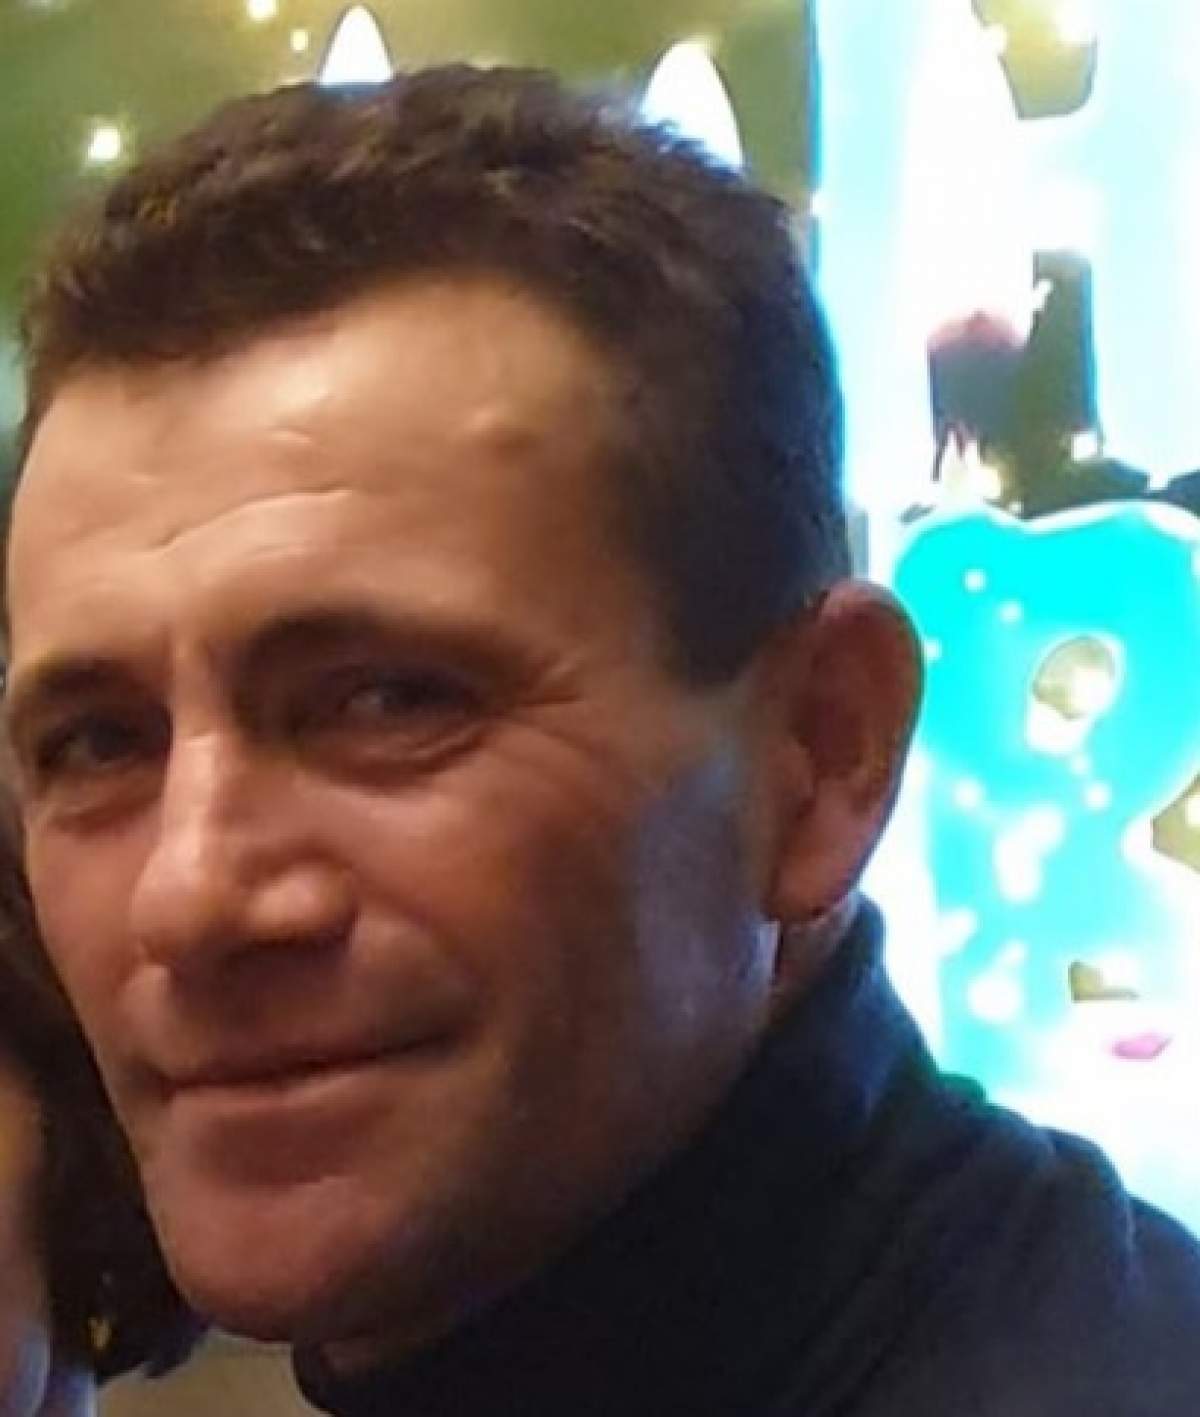 Moarte tragică pentru un român în Anglia! A stat o săptămână în comă, după ce a fost bătut crunt